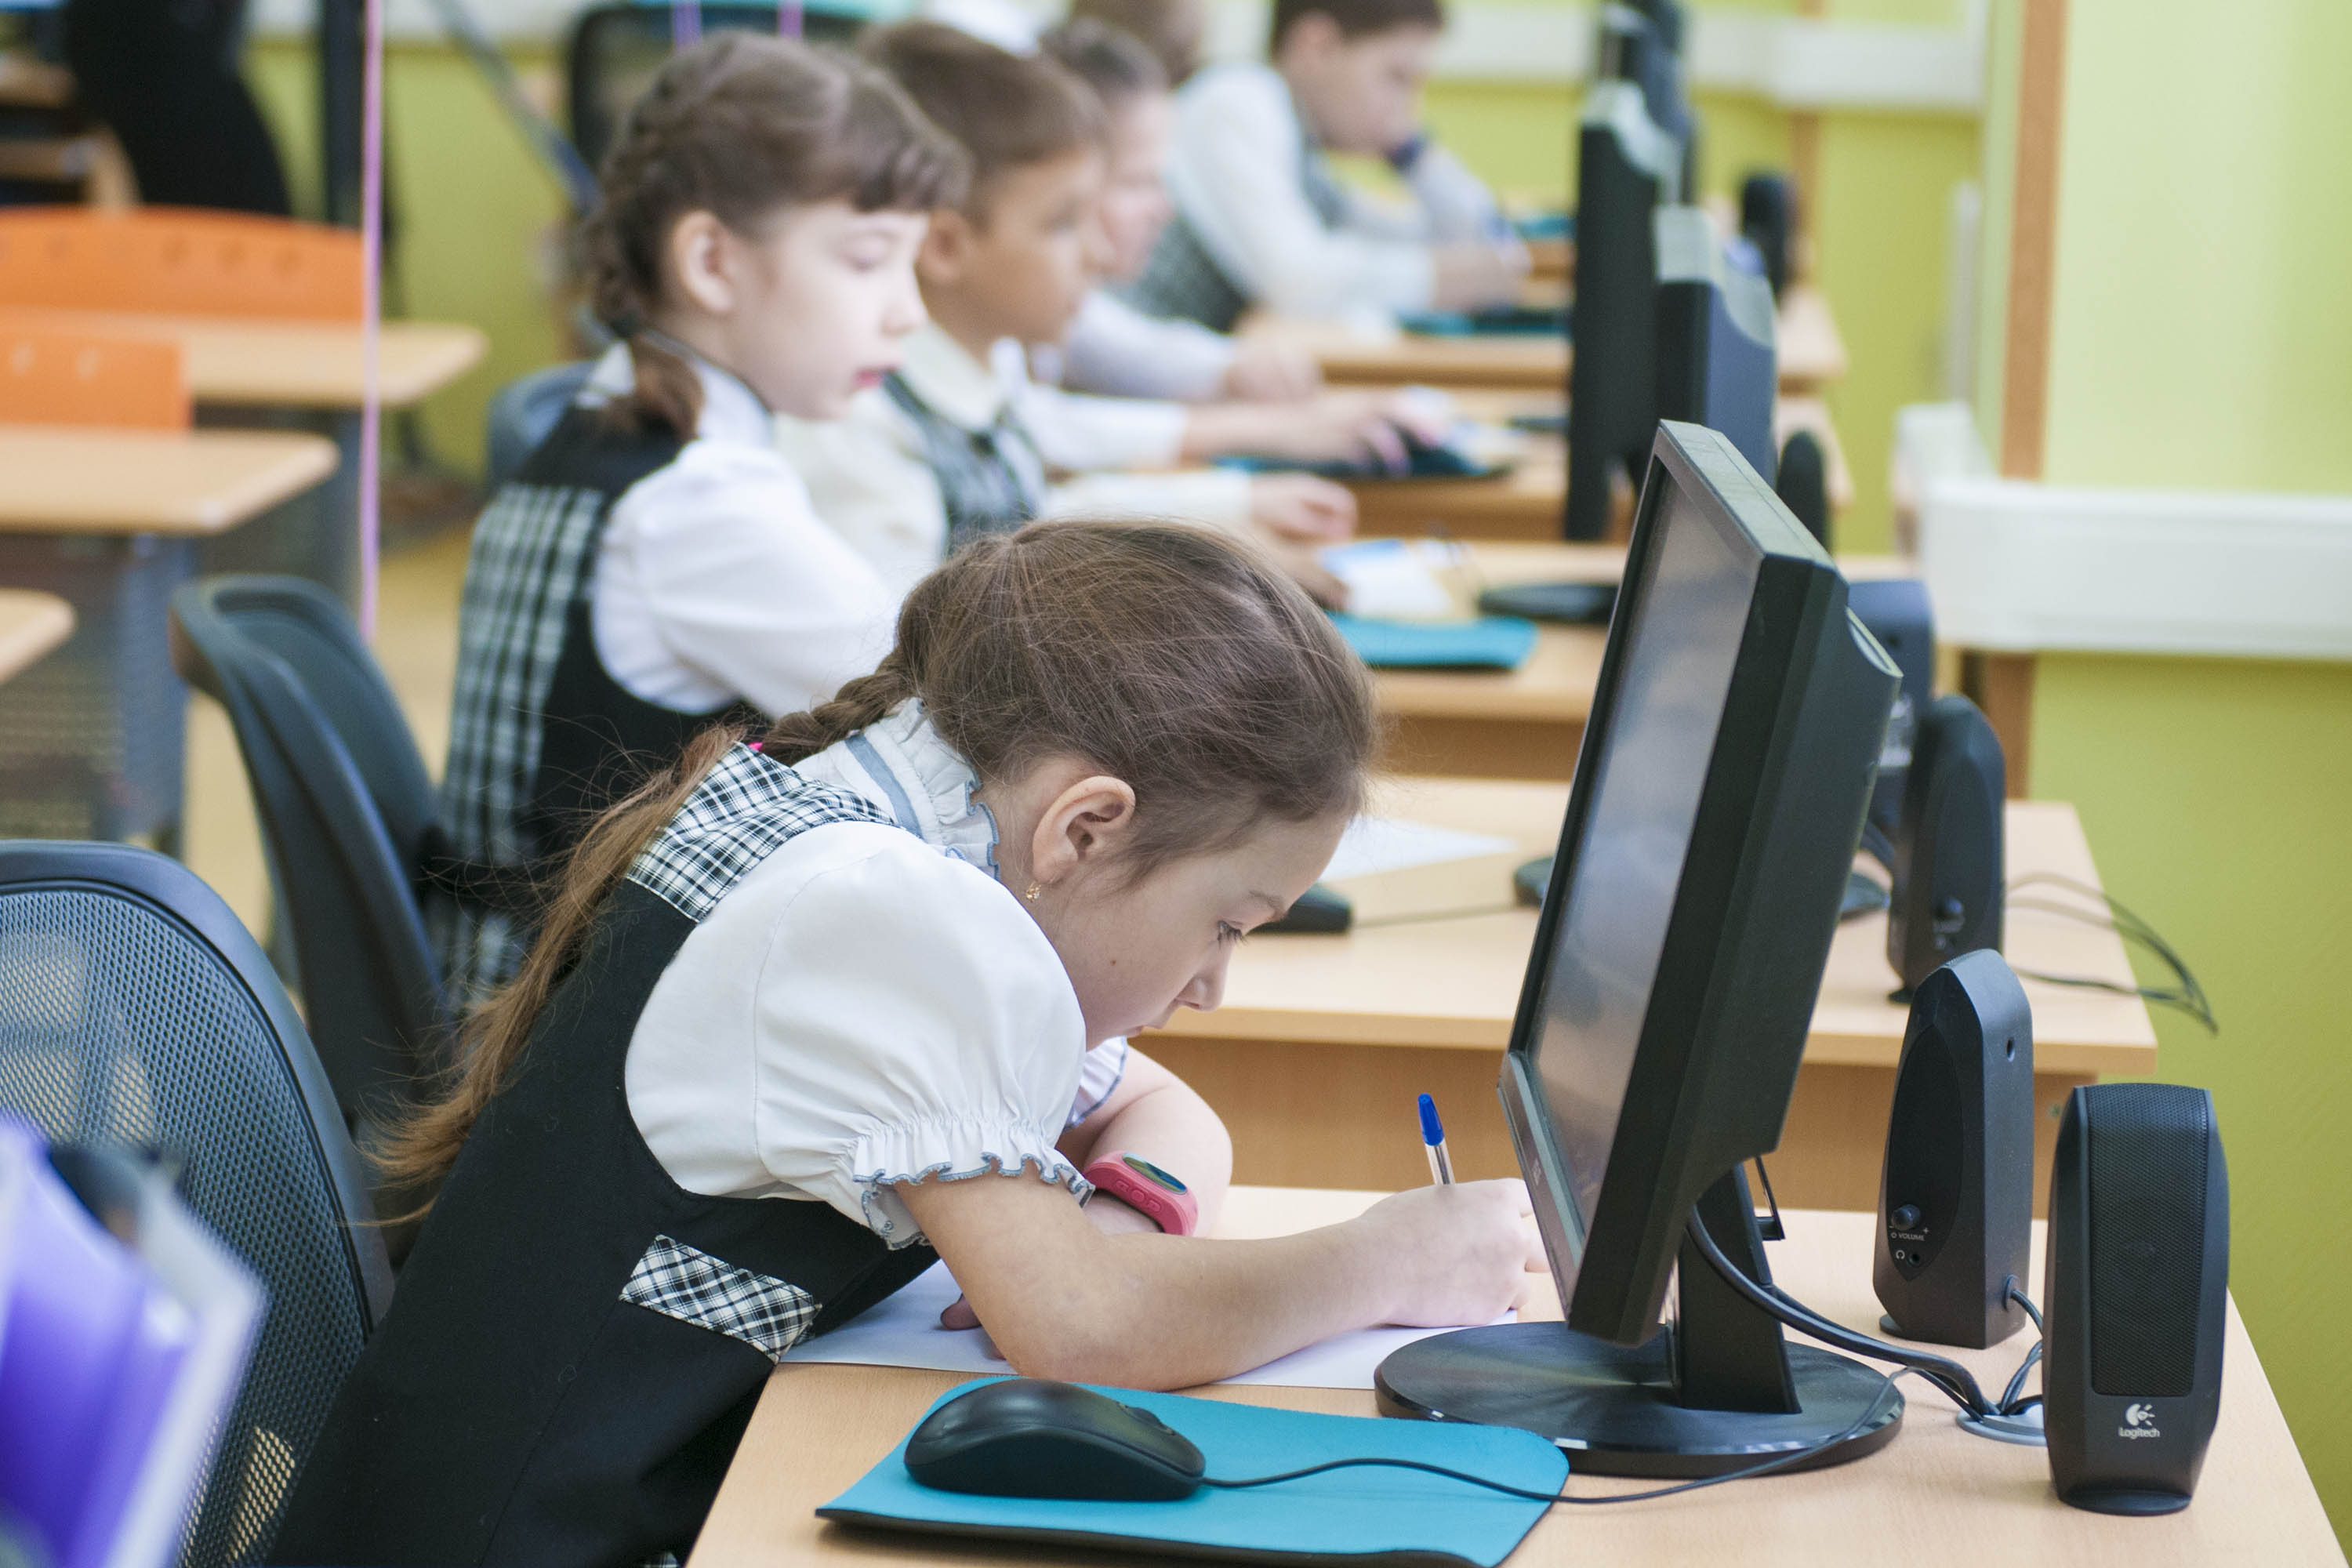 Компьютер дети школа. Компьютер в школе. Дети за компьютером в классе. Школьники за компьютерами в классе. Ученик за компьютером.